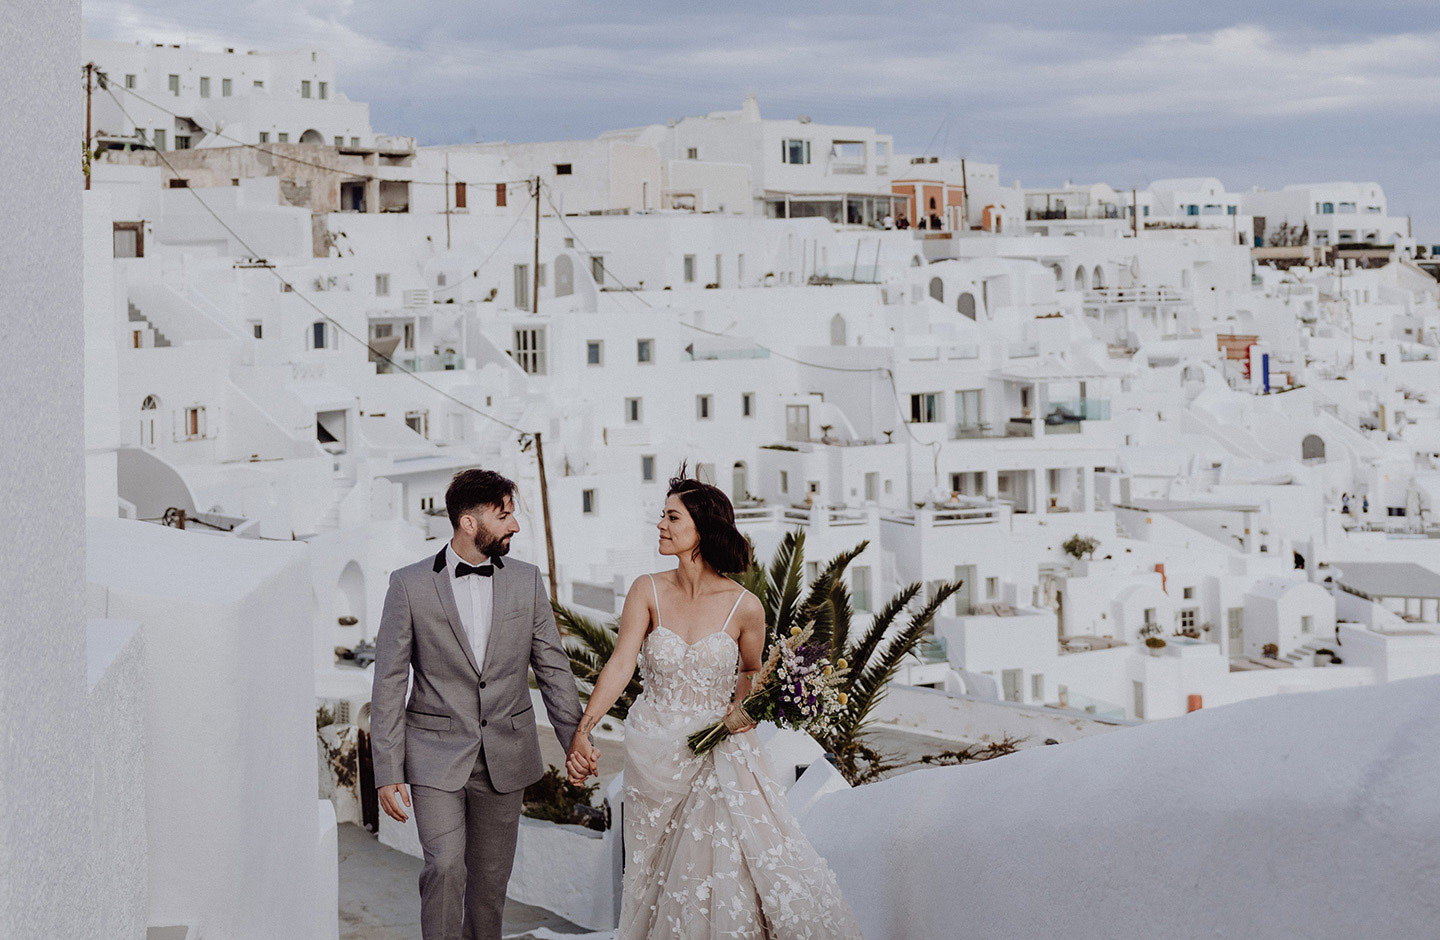  Das Hochzeitspaar schlendert durch die kleinen Gassen Santorinis